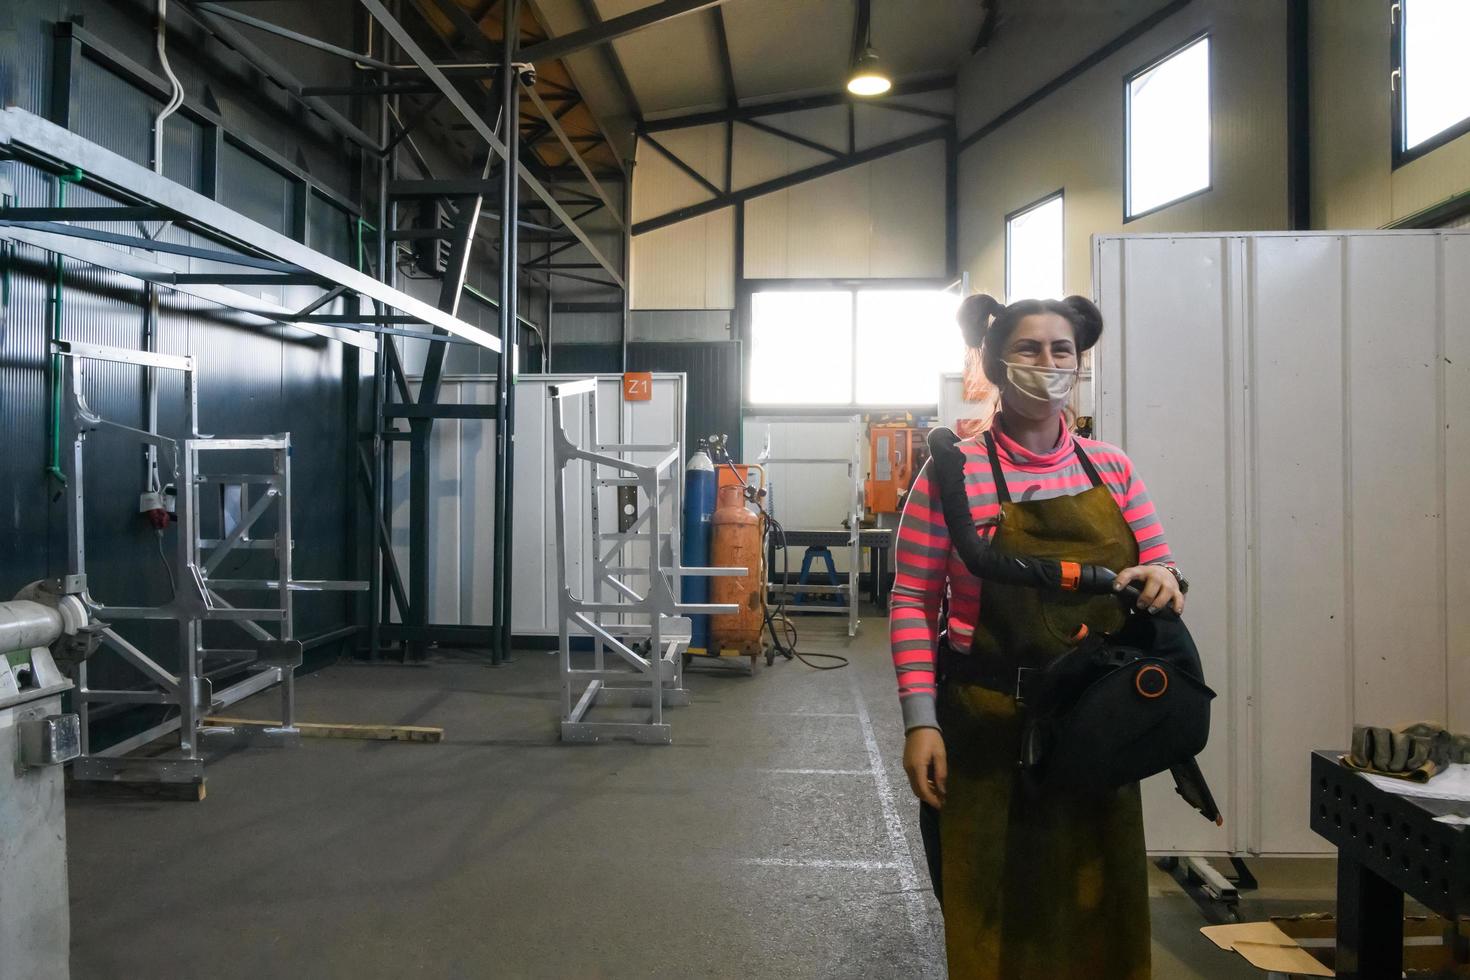 turquia, 2022 - um retrato de uma soldadora segurando um capacete e se preparando para um dia de trabalho na indústria metalúrgica foto